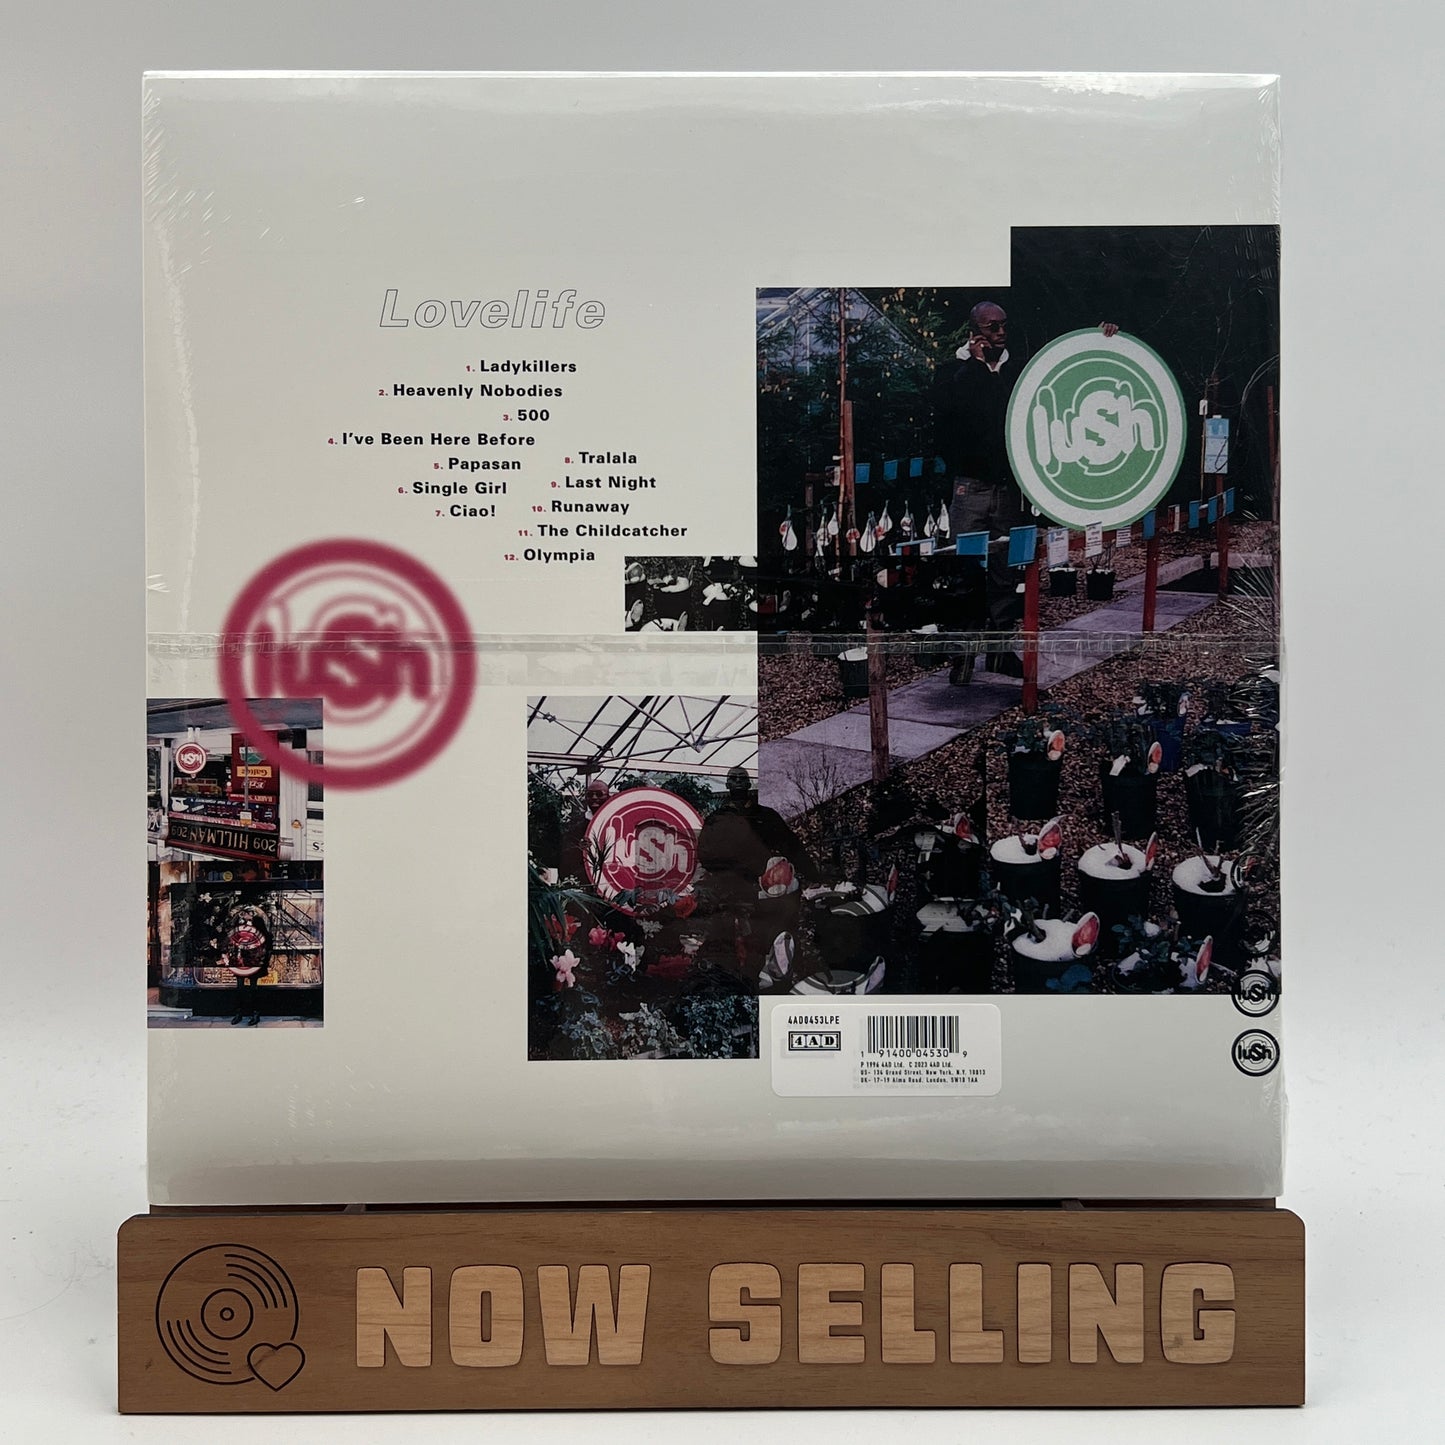 Lush - Lovelife Vinyl LP SEALED Clear Remaster Reissue